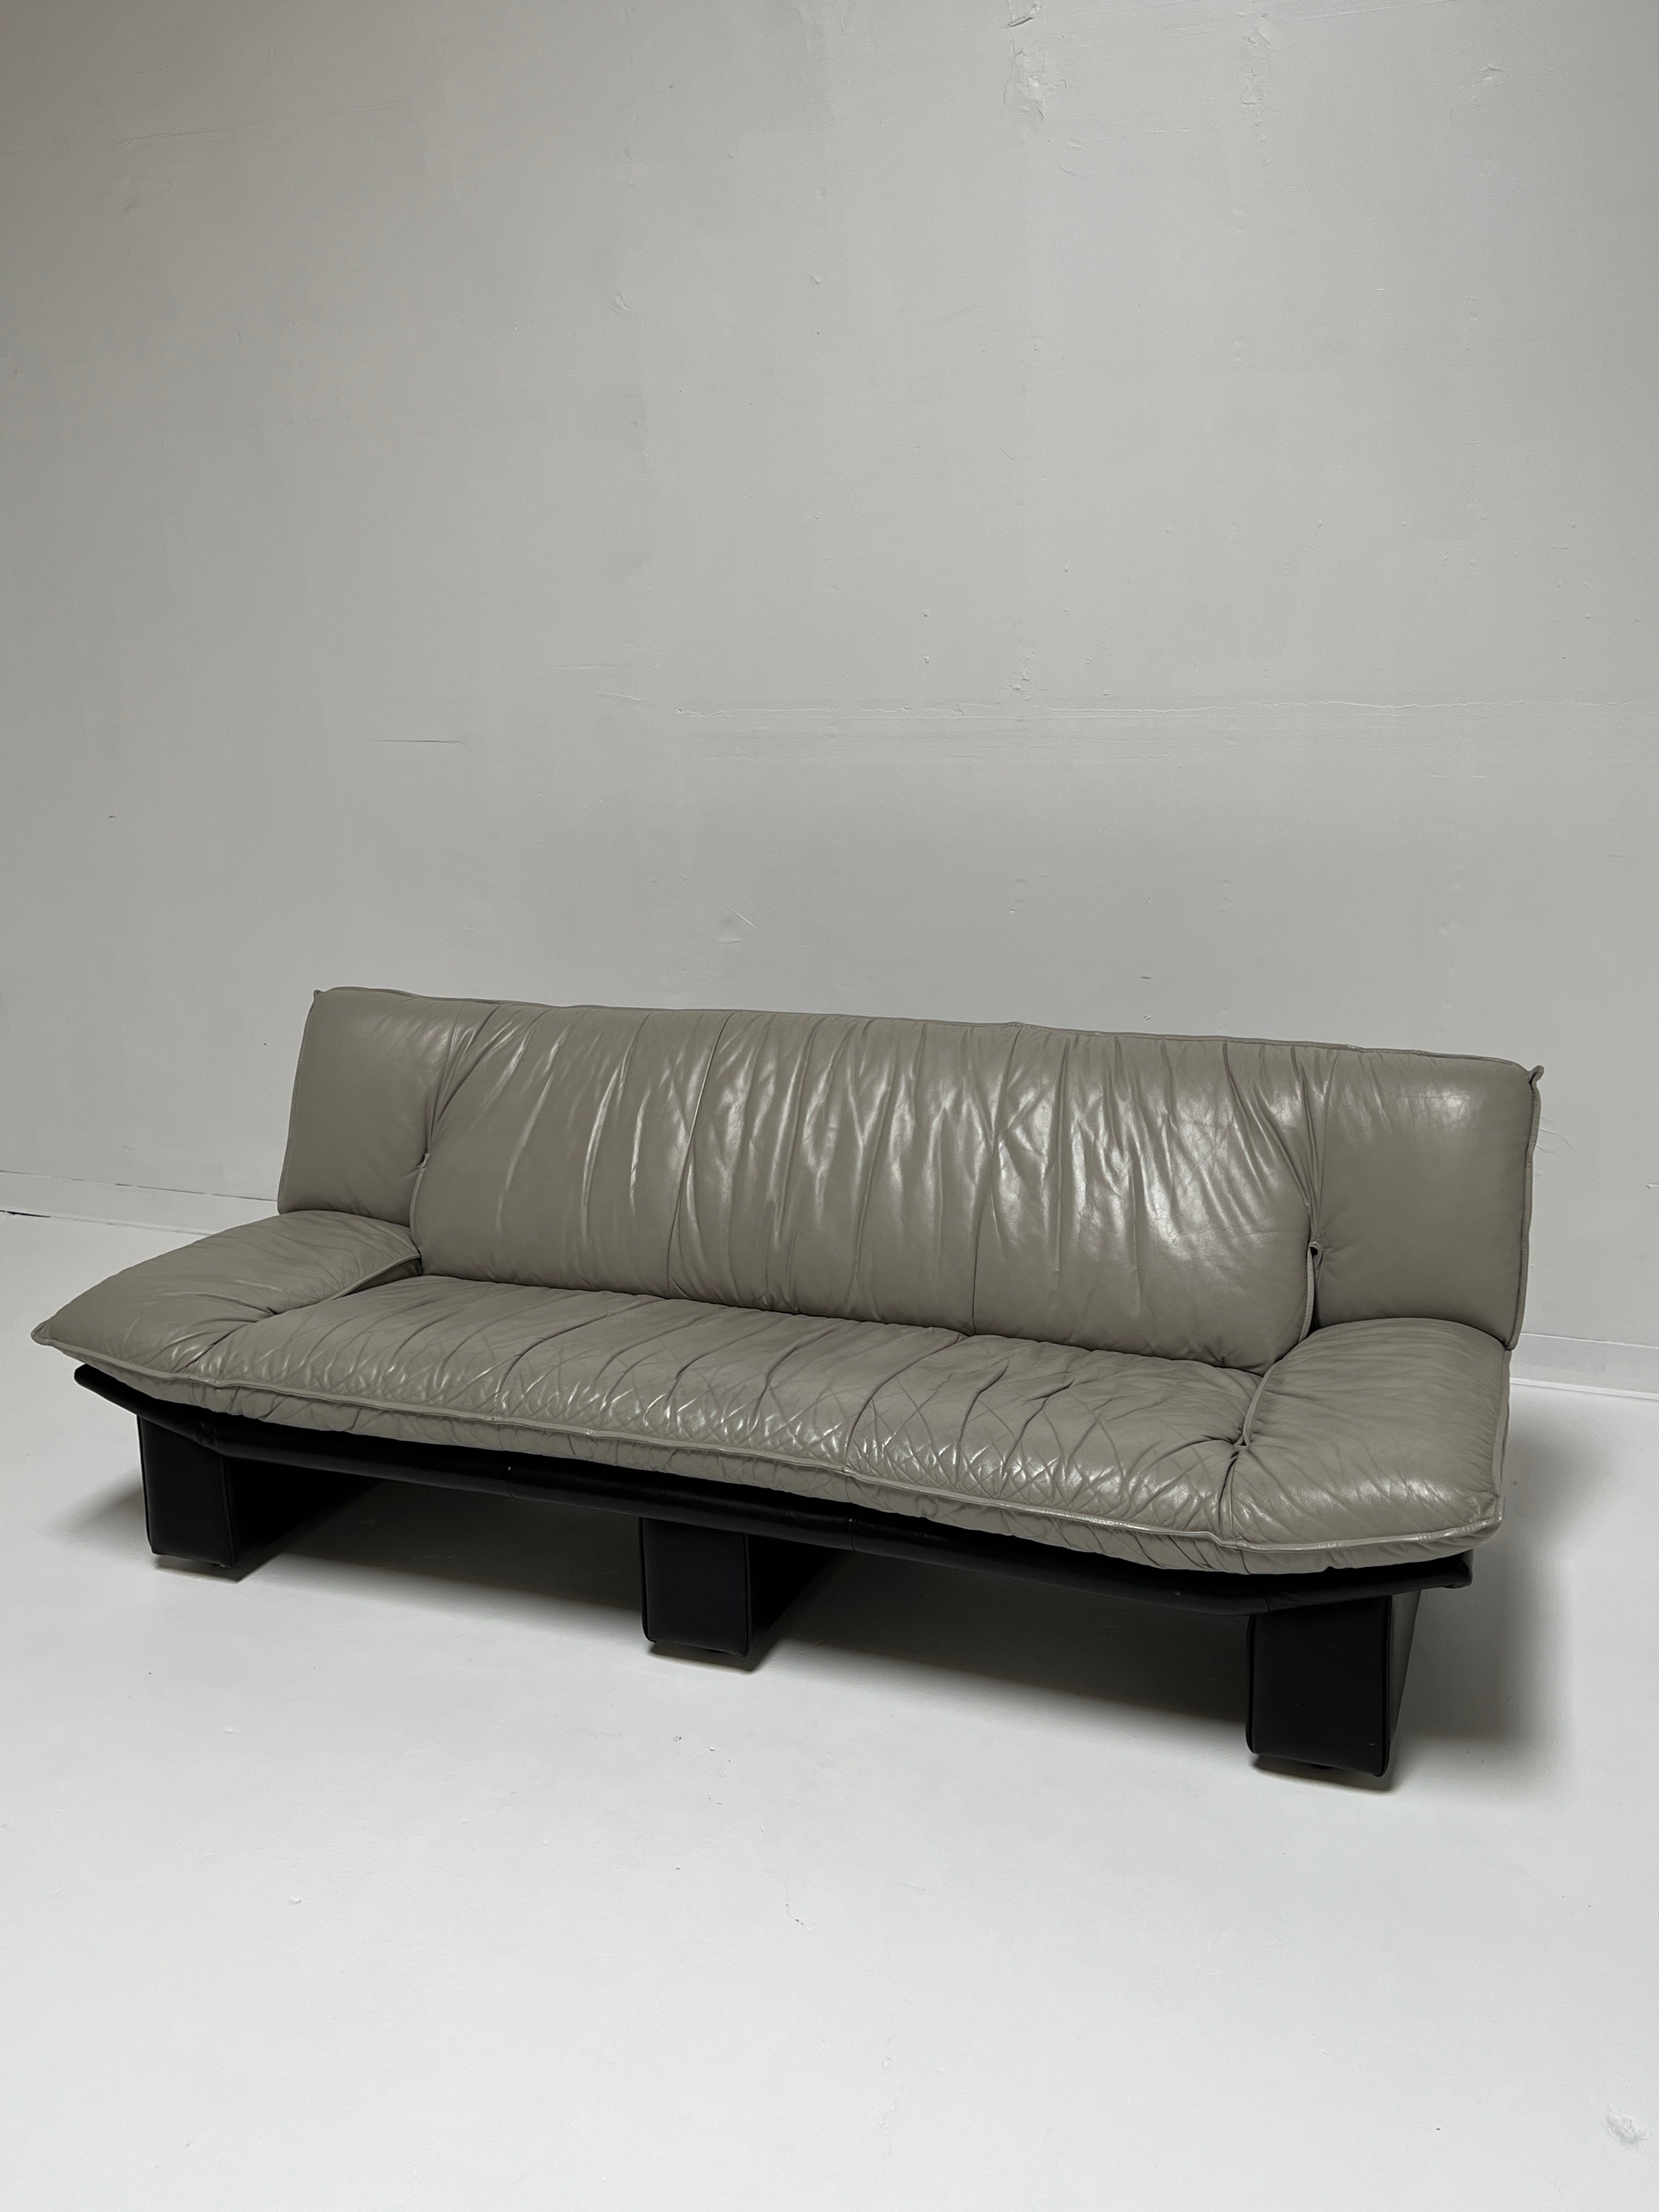 Italian Nicoletti Style Leather Sofa